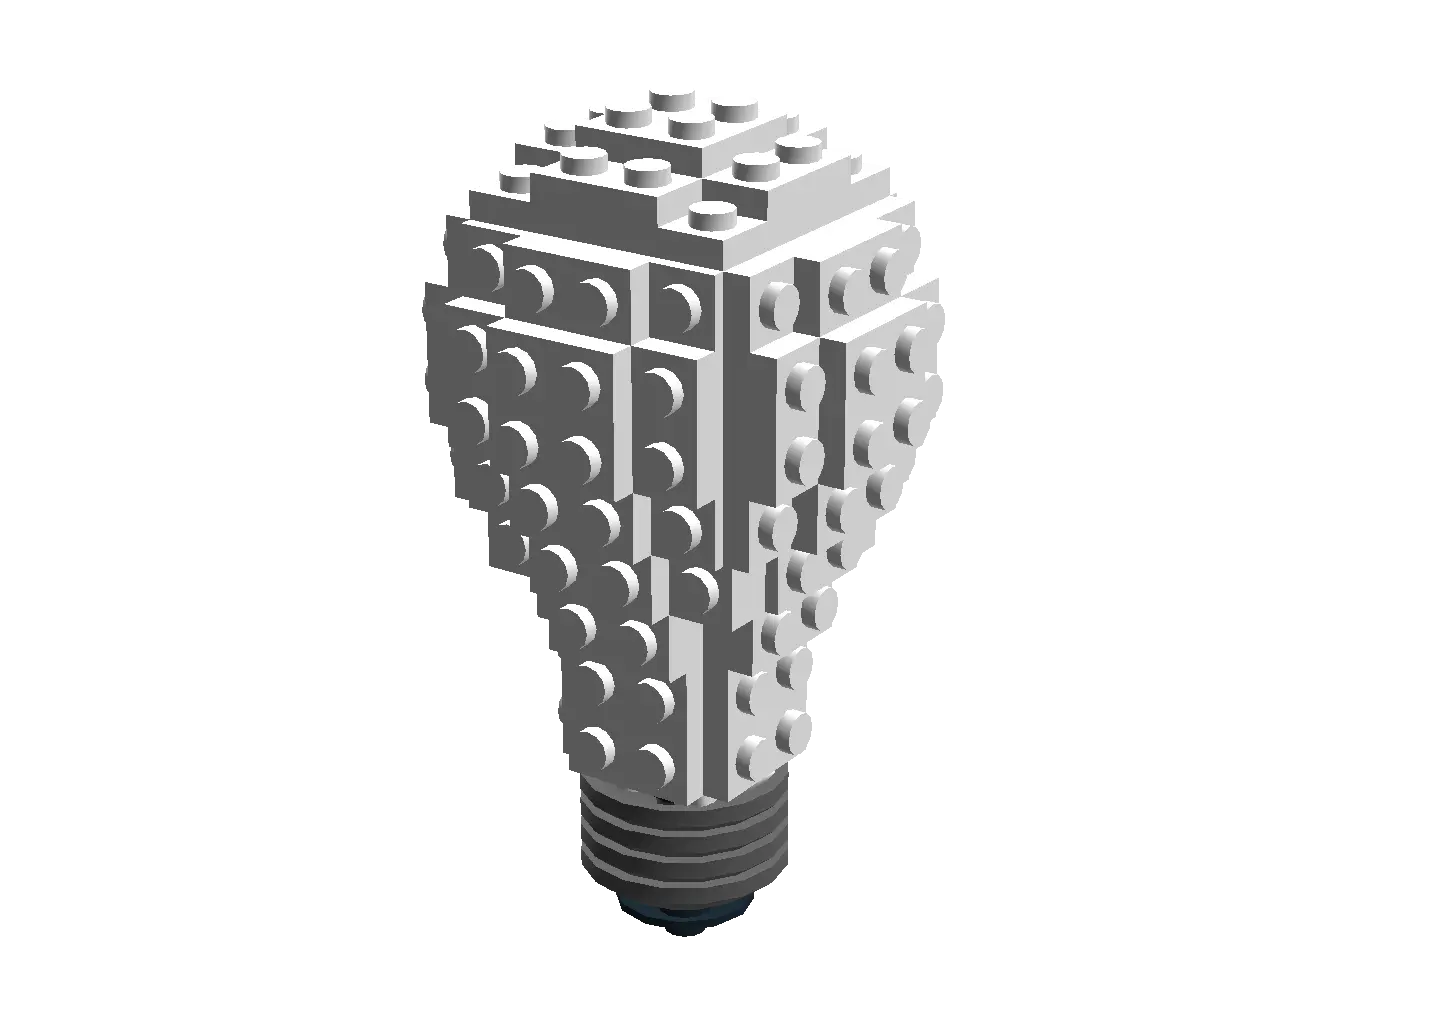 Lightbulb Png Lightbulb Lego Light Bulb Instructions Lego Bulb Png Lightbulb Png